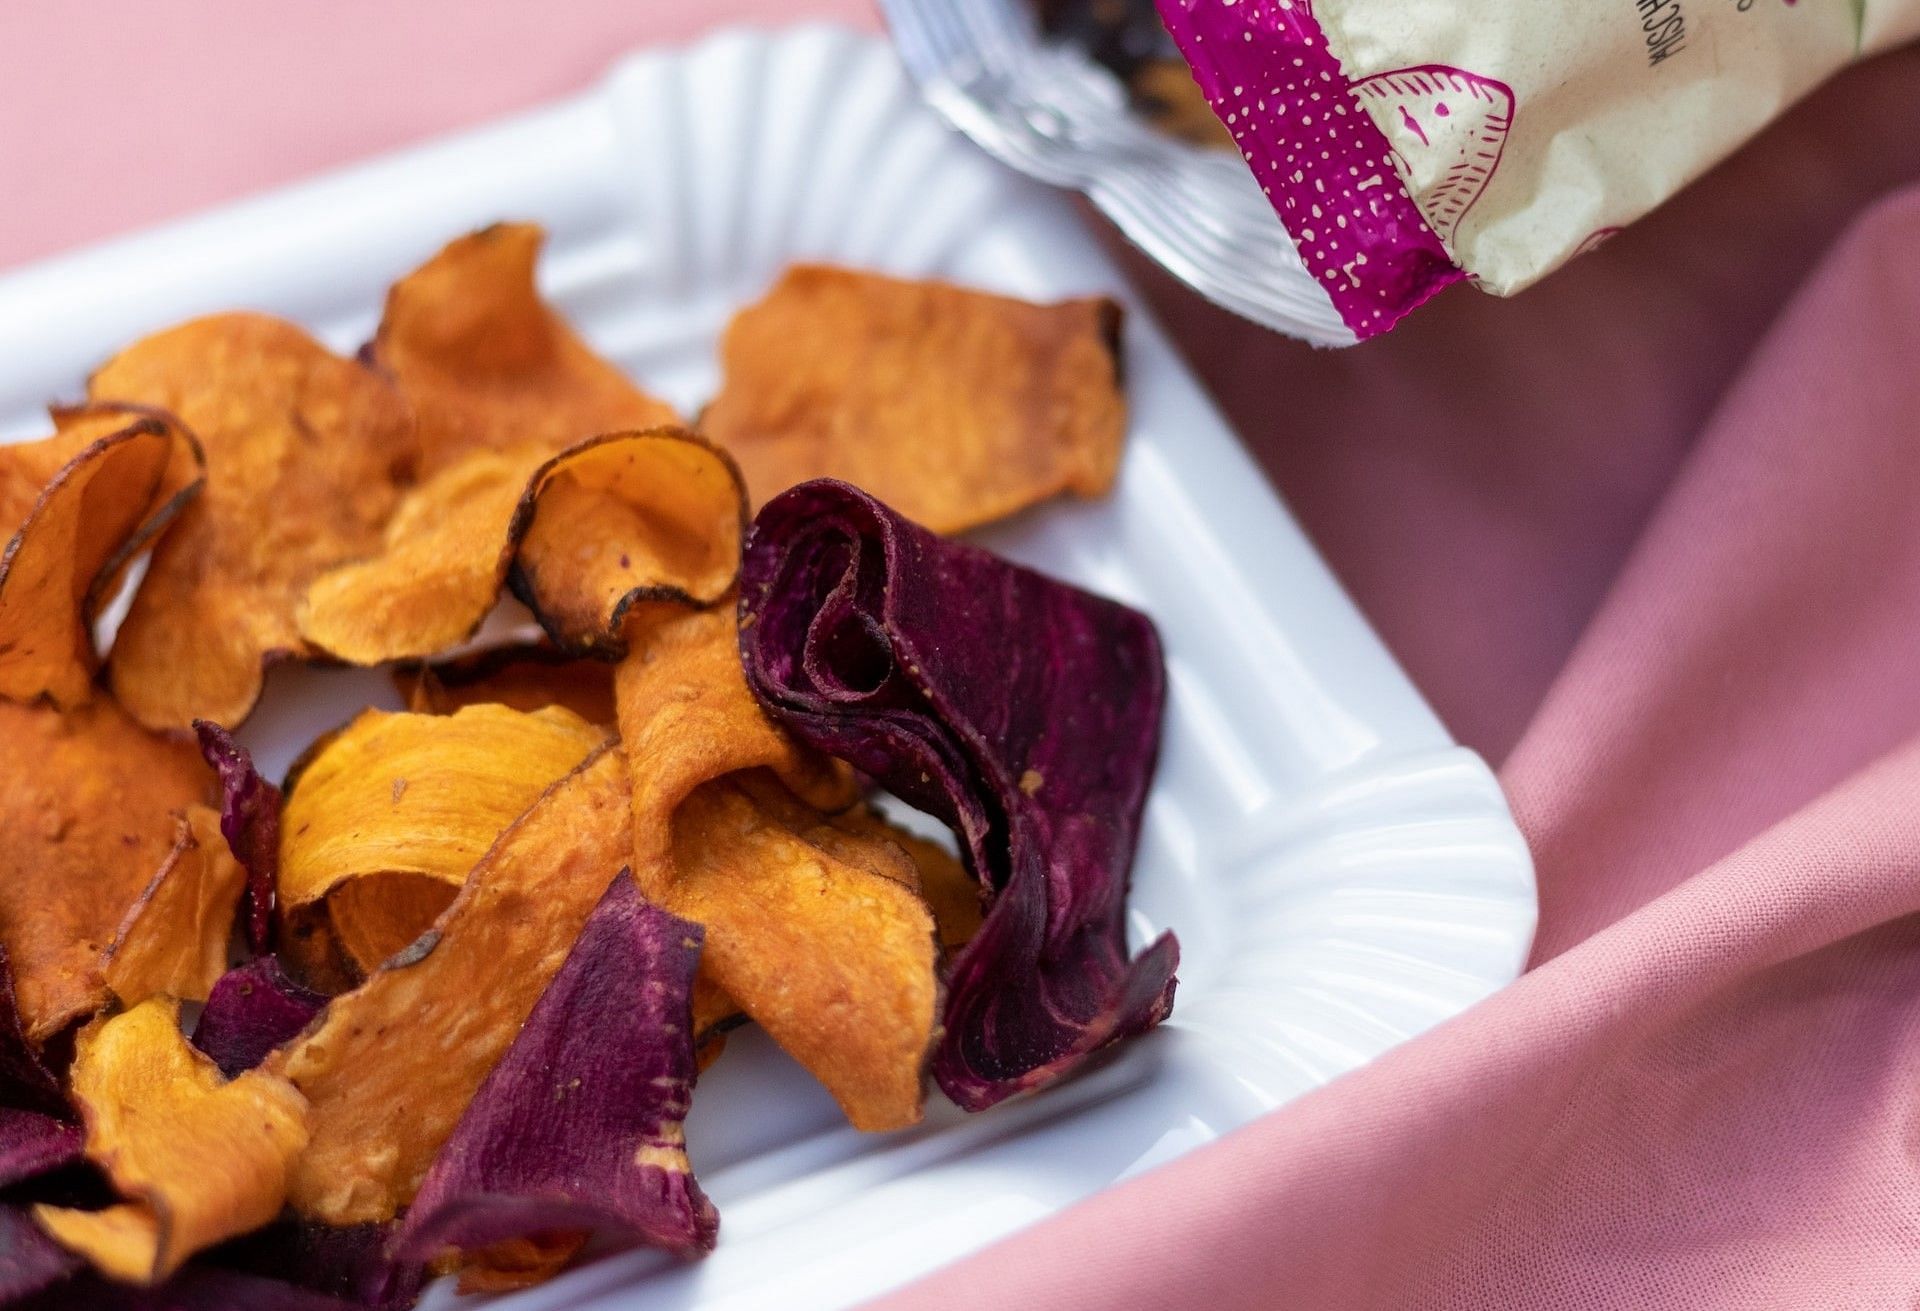 Healthy alternatives to chips (Photo via Unsplash/Yulia Khlebnikova)